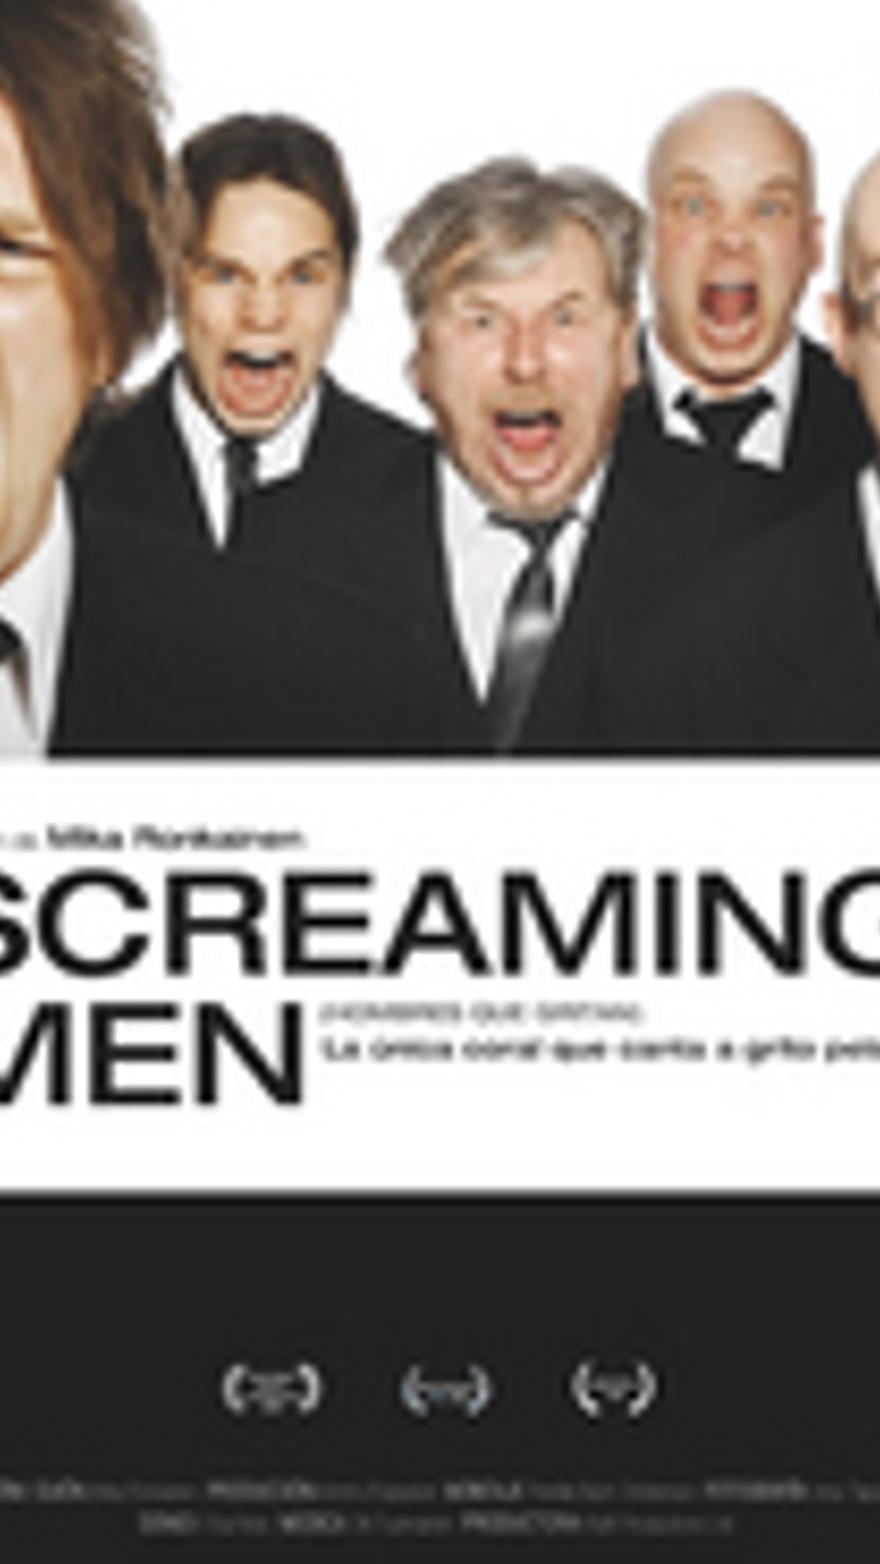 Screaming men